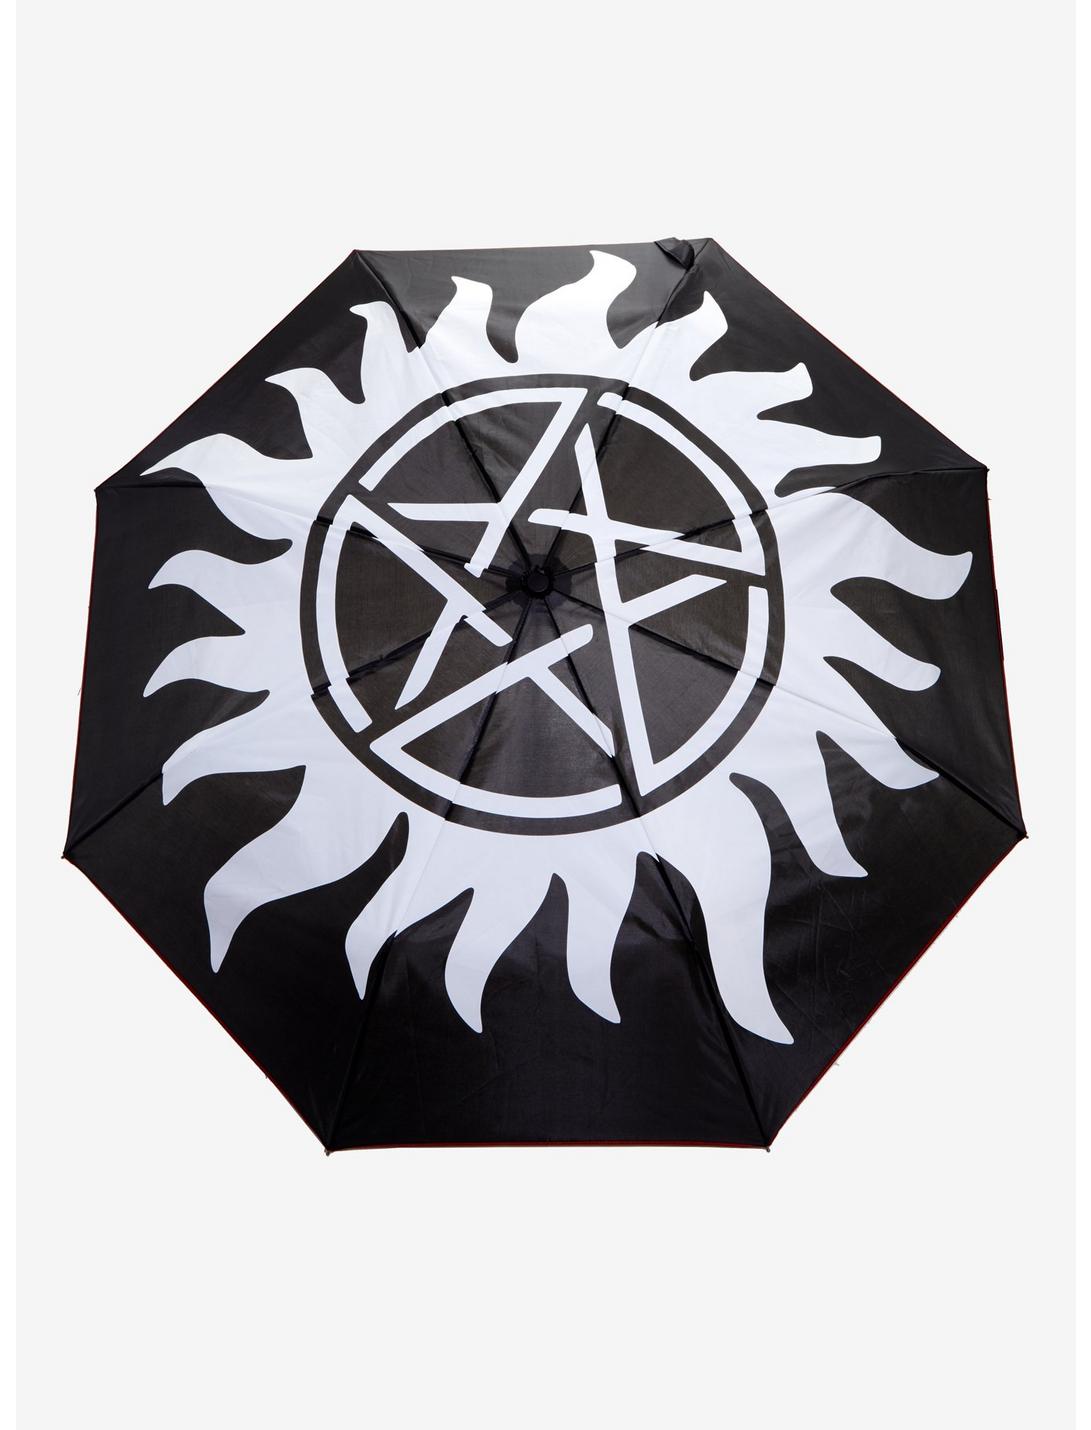 Supernatural Anti-Possession Symbol Liquid Reactive Umbrella, , hi-res